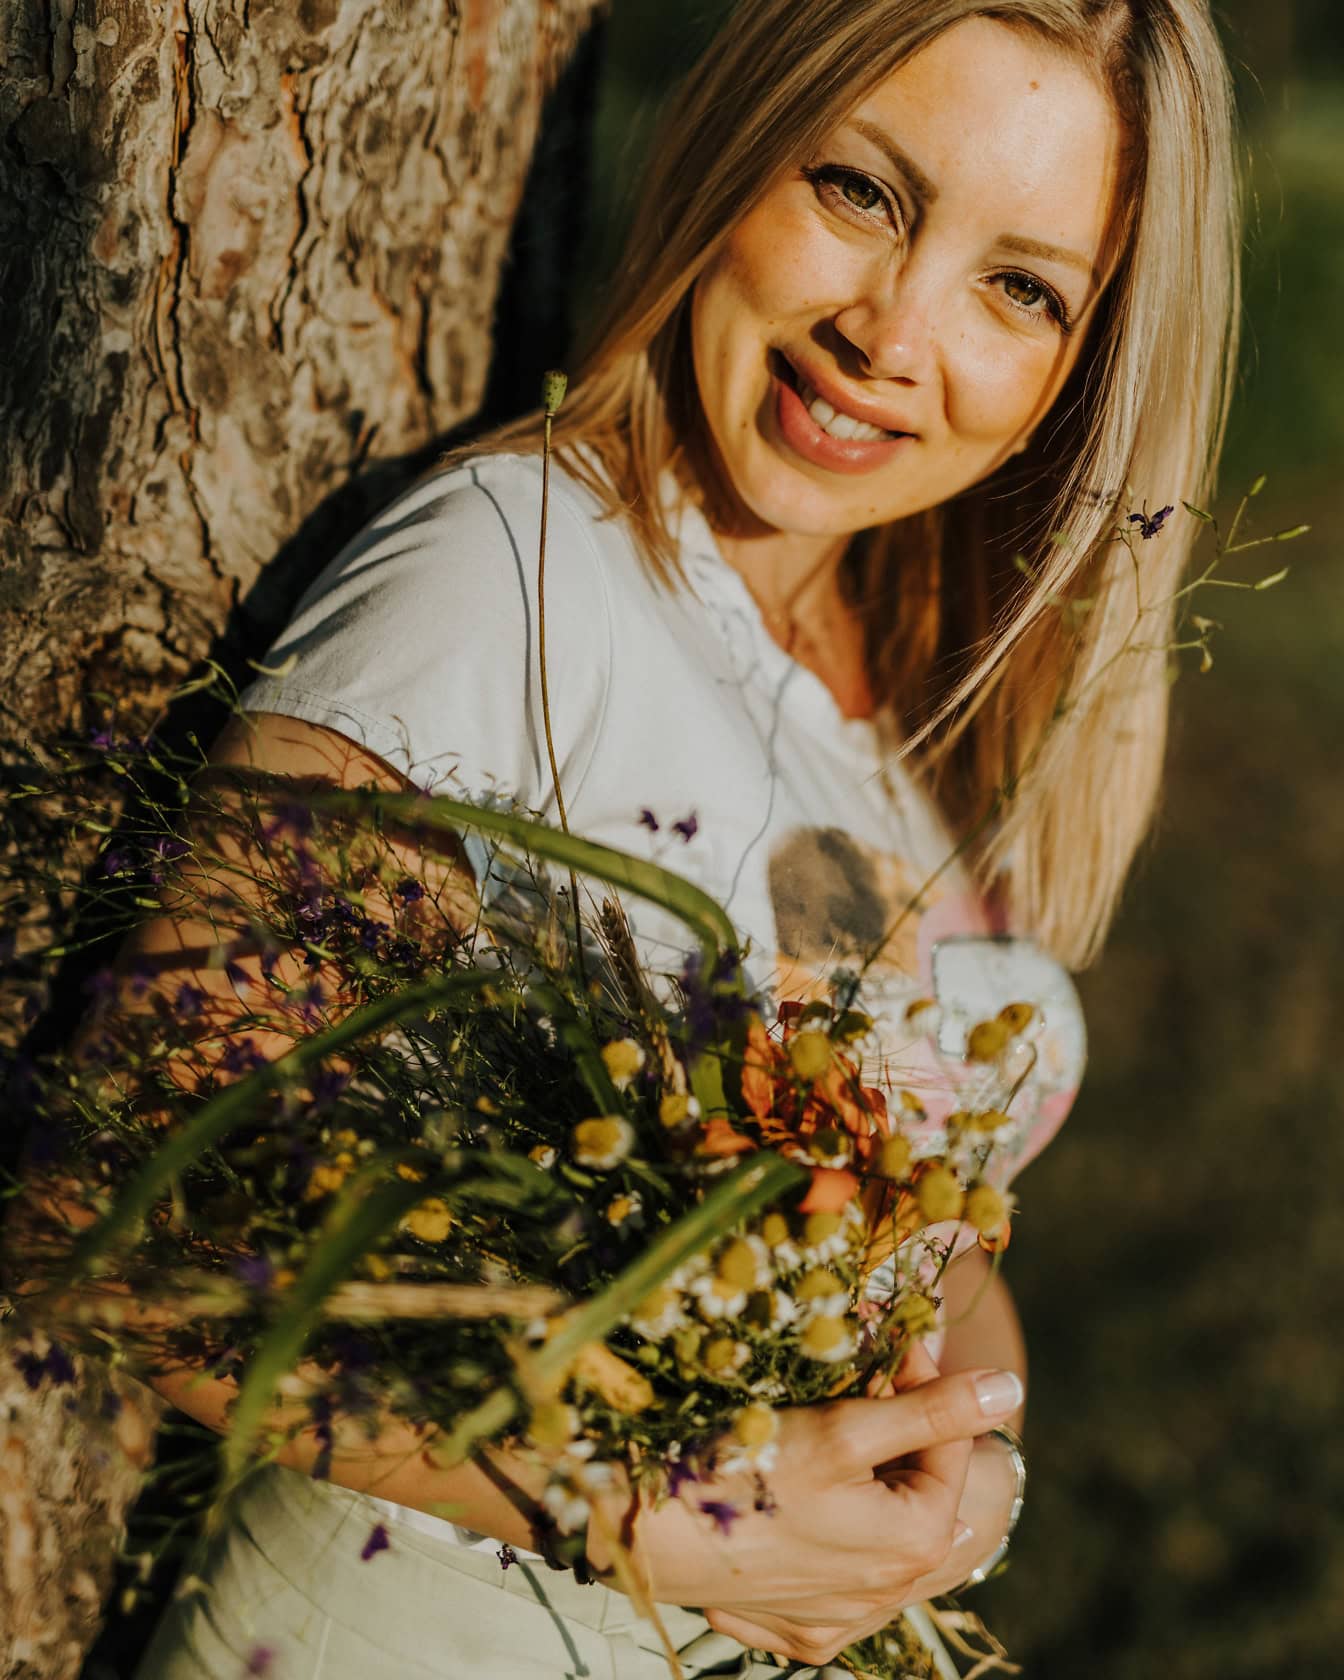 Retrato de una mujer rubia sonriente apoyada en un árbol mientras sostiene un ramo de flores silvestres